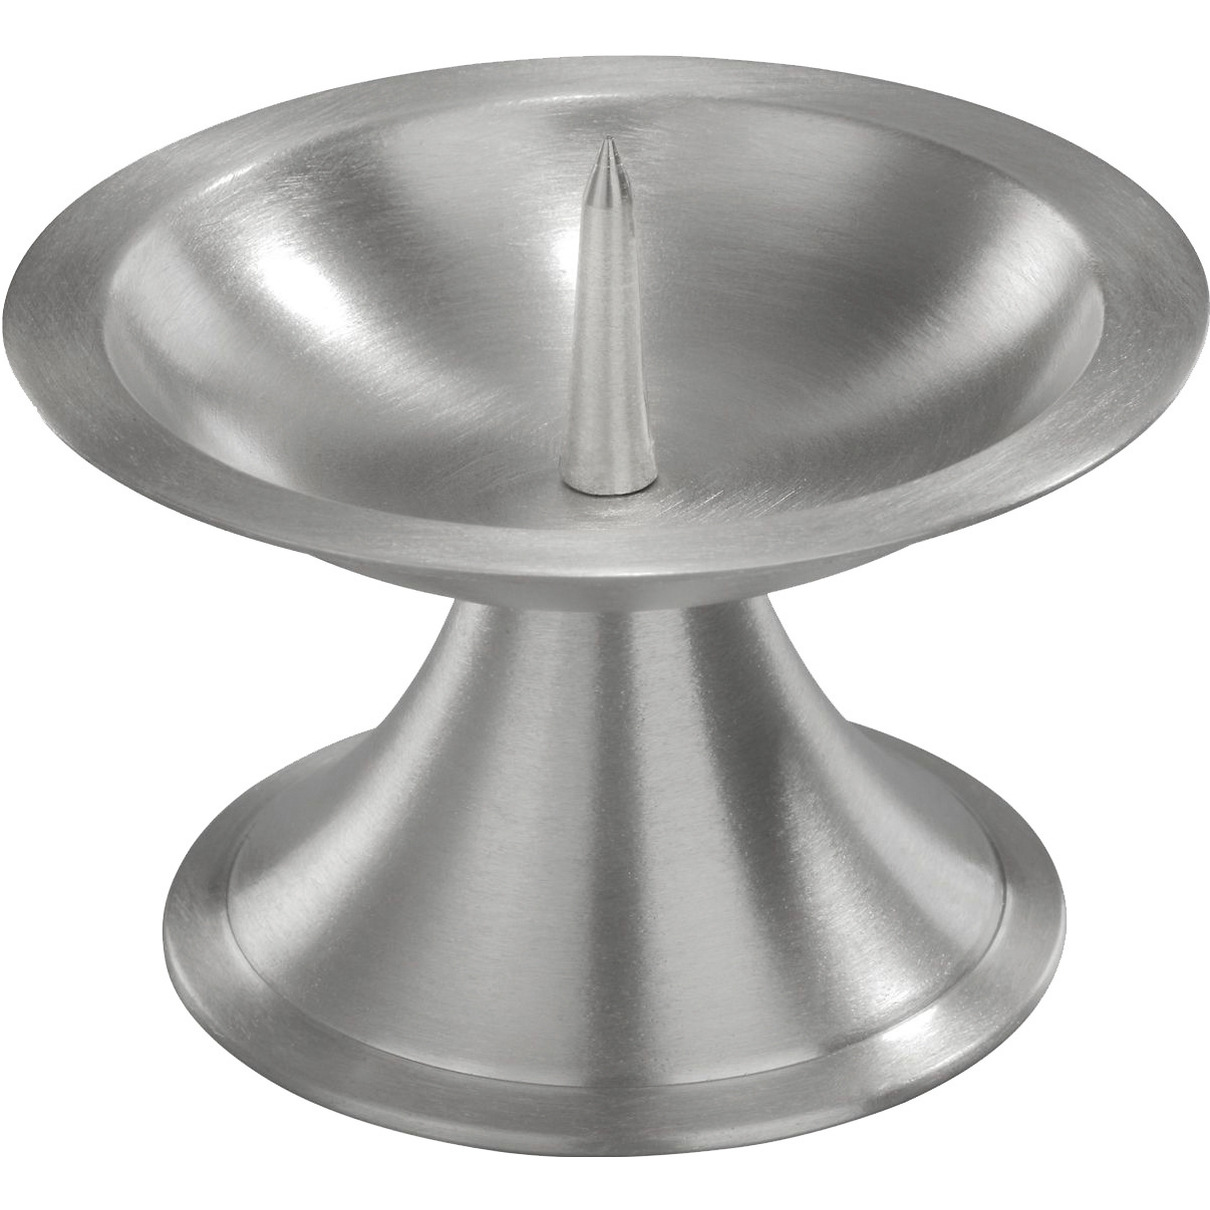 1x Luxe metalen kaarsenhouder zilver voor stompkaarsen van 7-8 cm